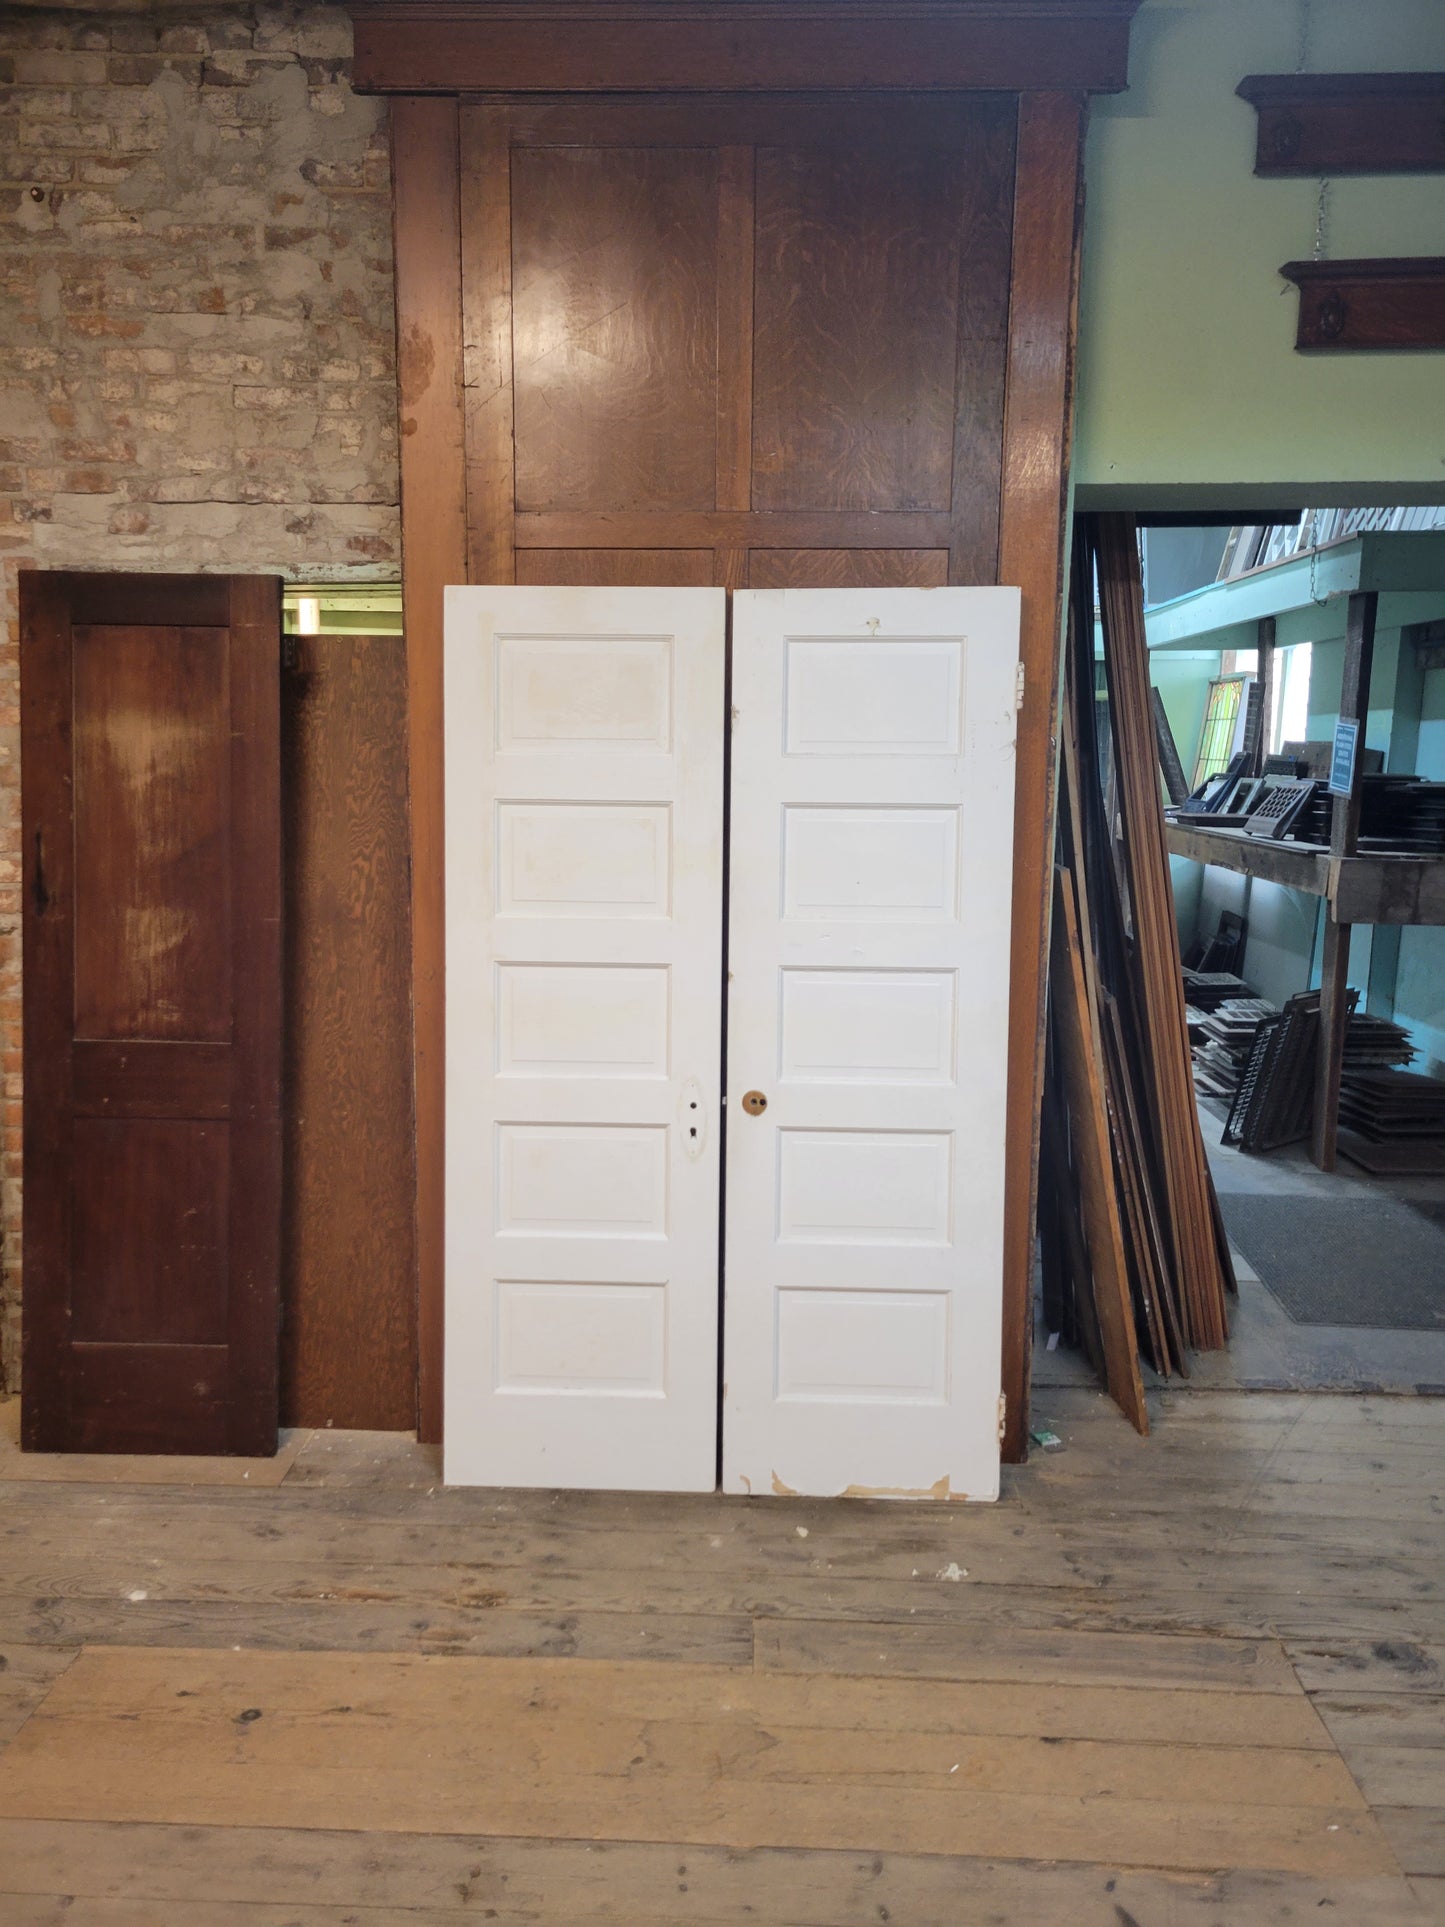 Pair of 24" Wide Antique White Five Panel Doors, Narrow Set of Solid Wood Double Doors #3